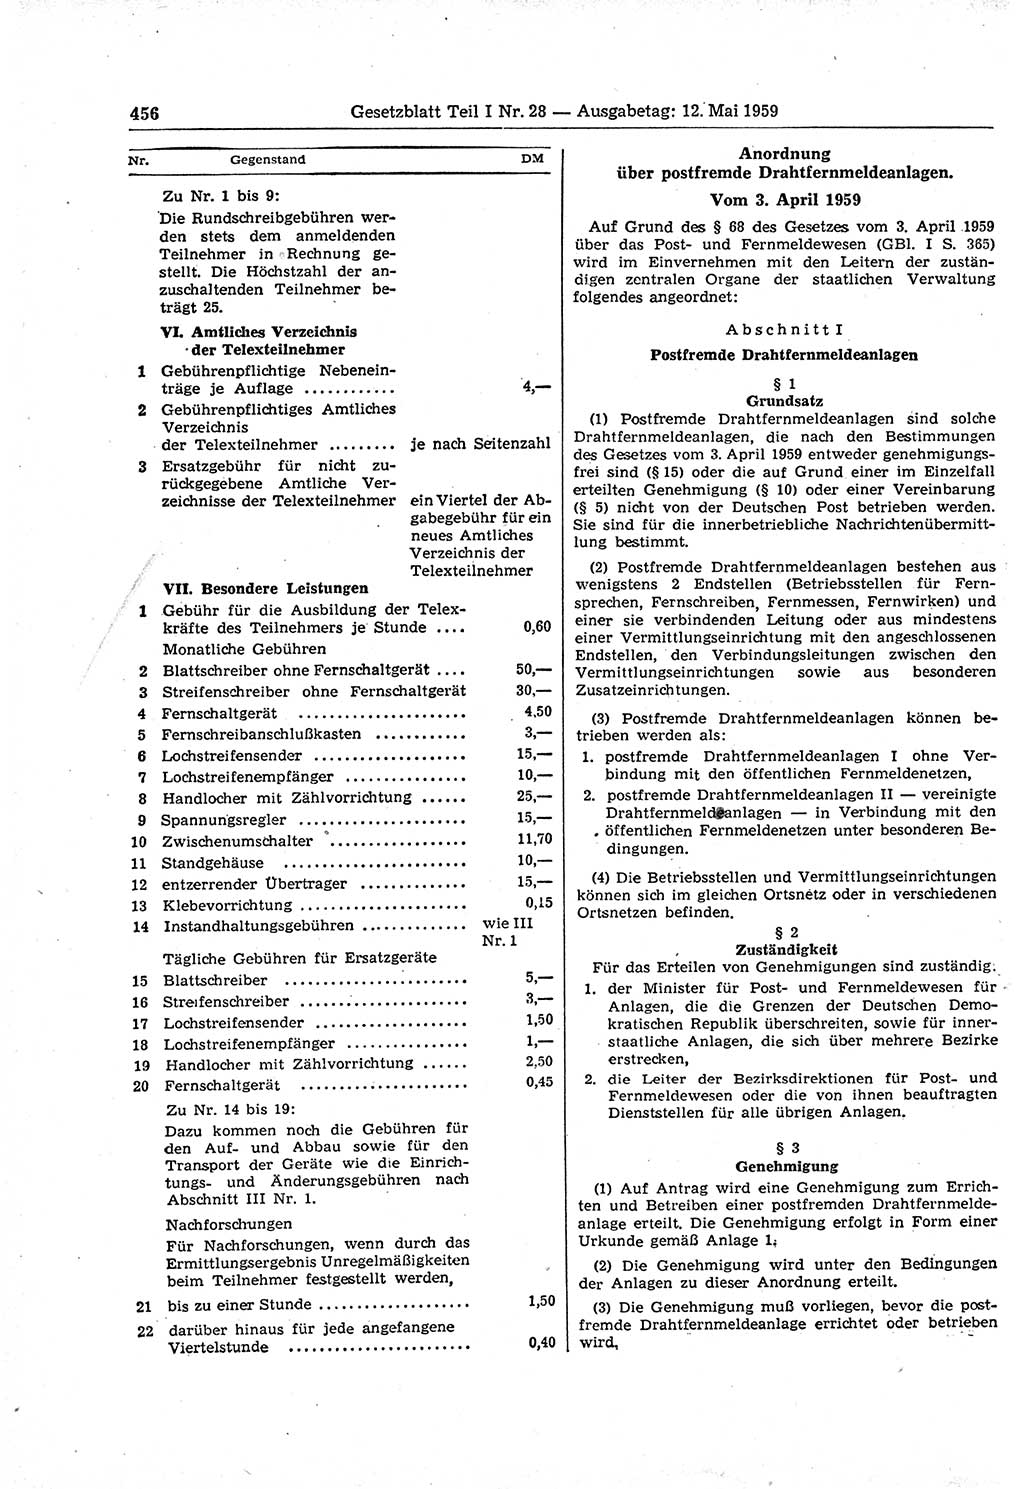 Gesetzblatt (GBl.) der Deutschen Demokratischen Republik (DDR) Teil Ⅰ 1959, Seite 456 (GBl. DDR Ⅰ 1959, S. 456)